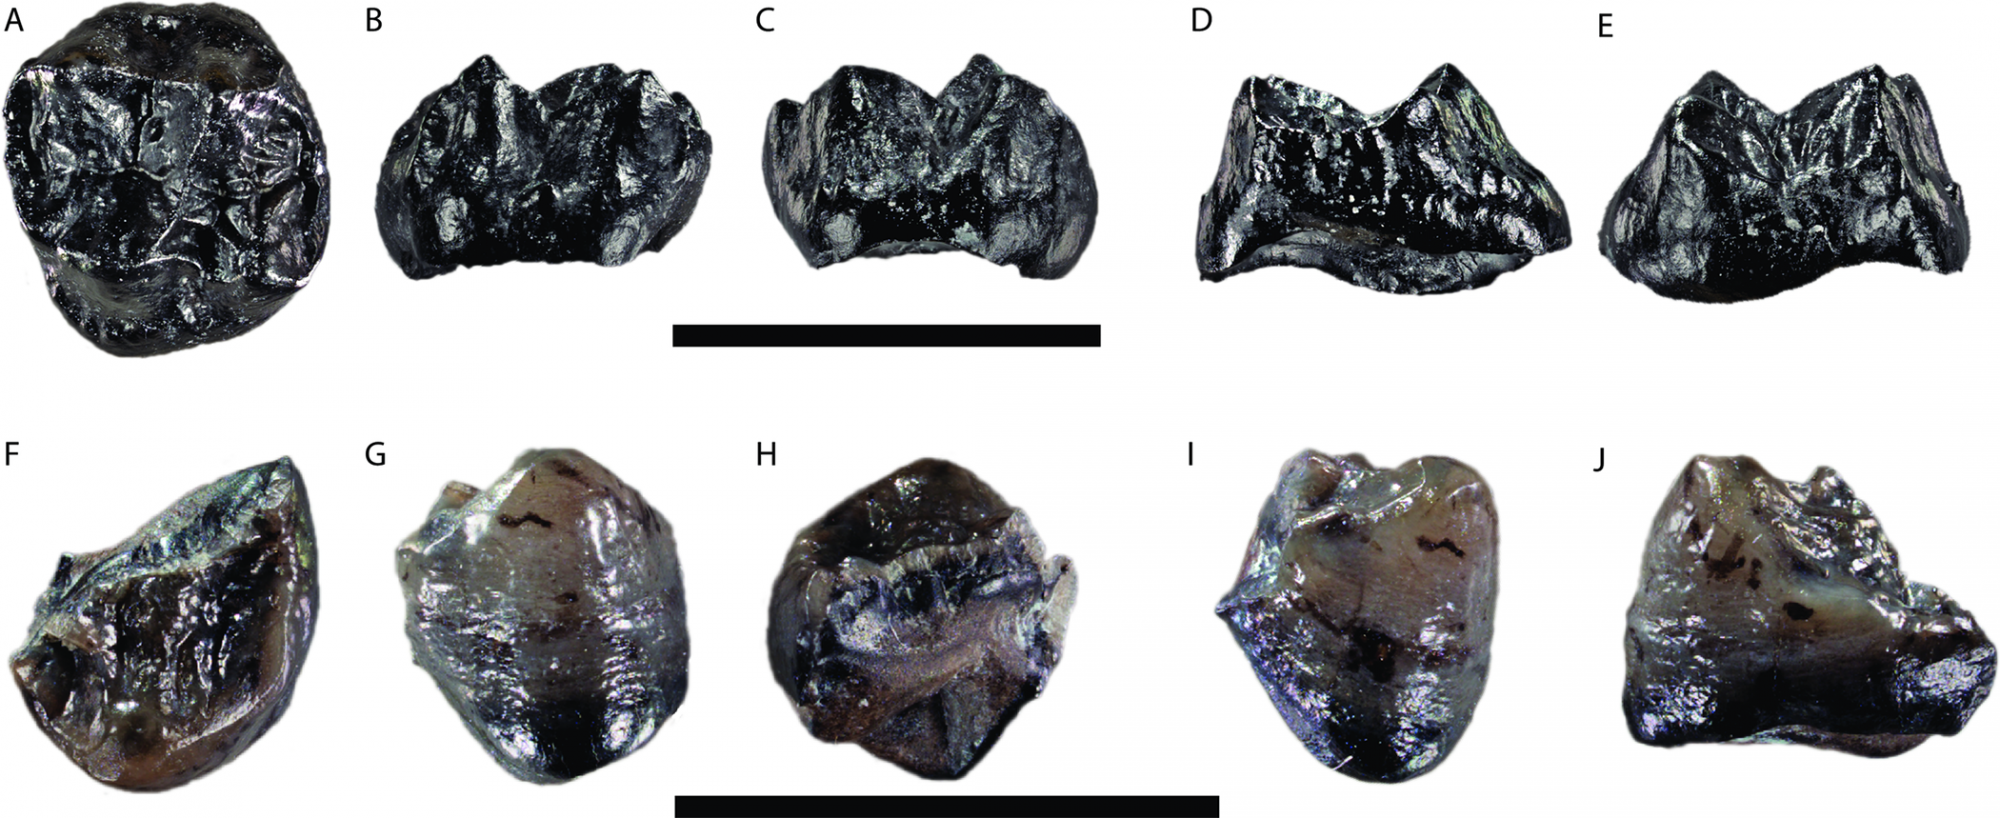 A bajorországi Hammerschmiede lelőhelyről előkerült, Buronius manfredschmidi néven lajstromozott hominida fosszilizálódott fogai